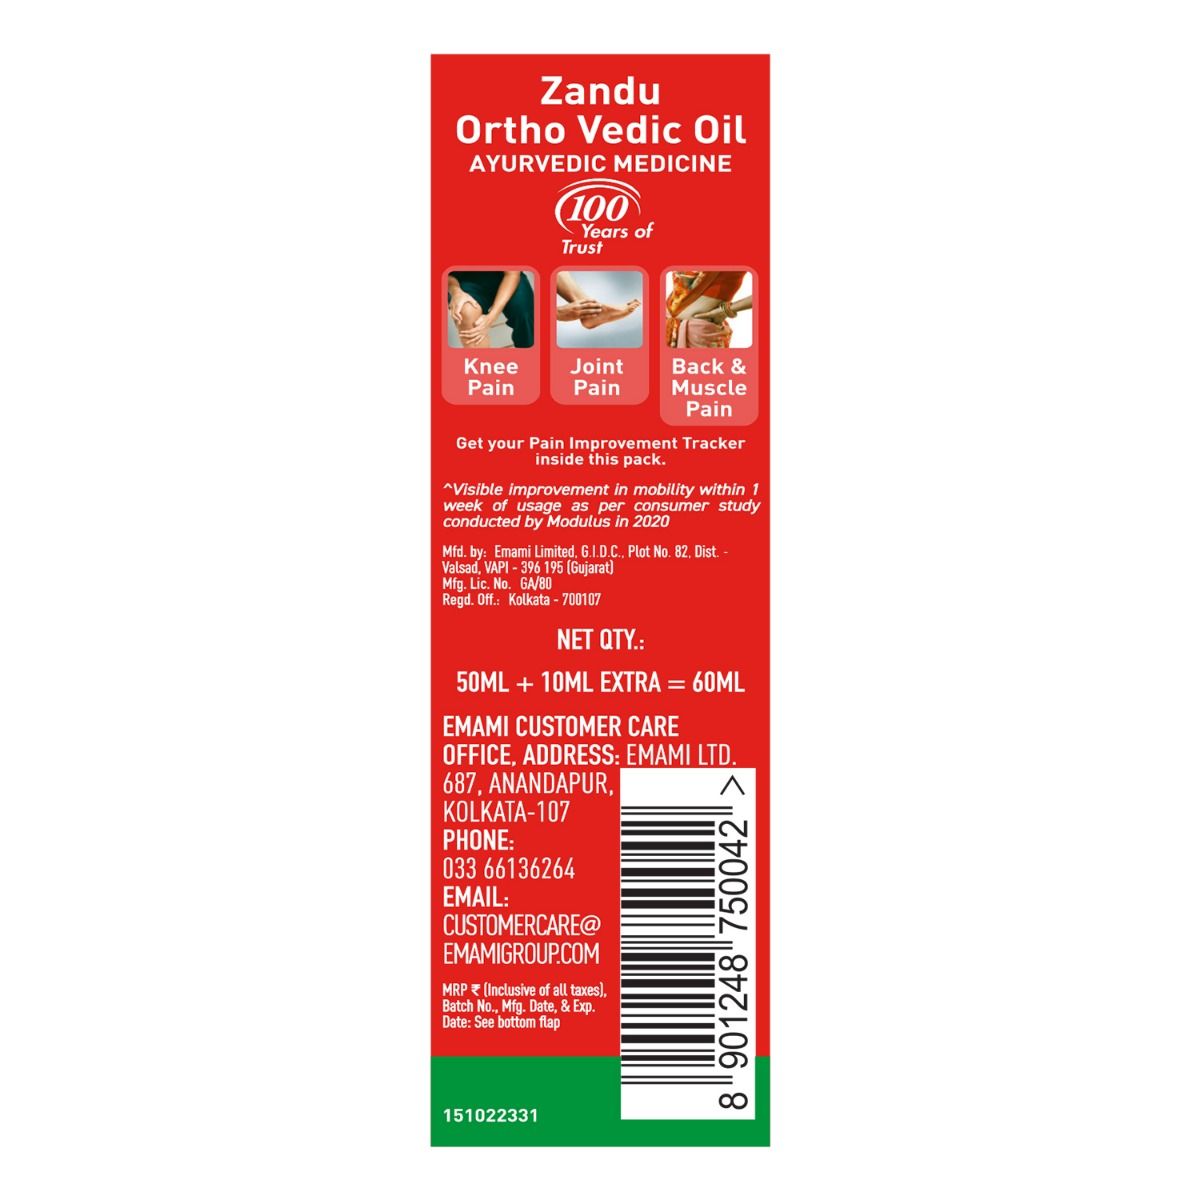 Zandu Ortho Vedic Oil, 50 ml, Pack of 1 